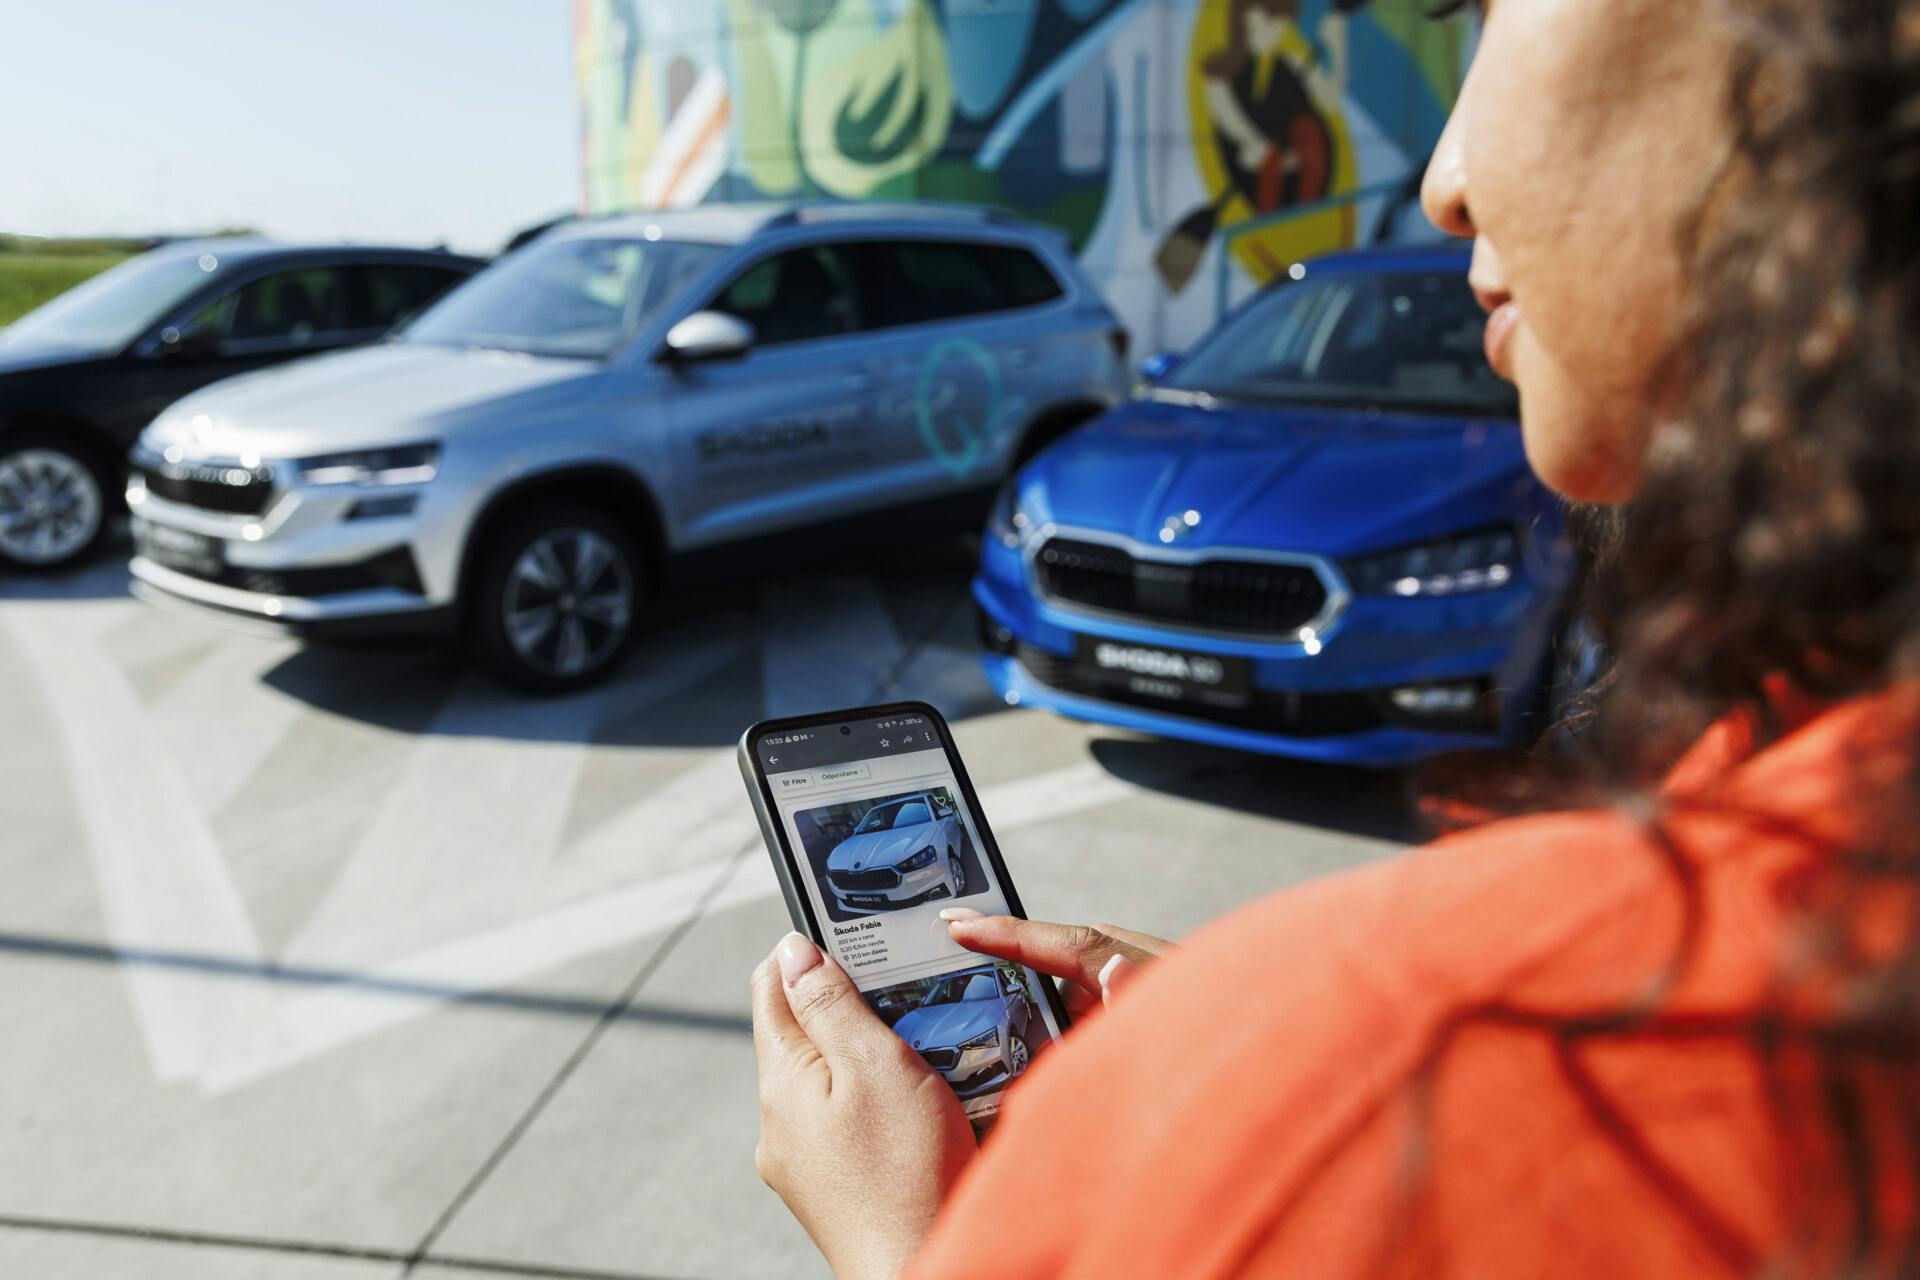 Škoda GO prináša inovatívny spôsob požičiavania áut priamo od autorizovaného predajcu Škoda